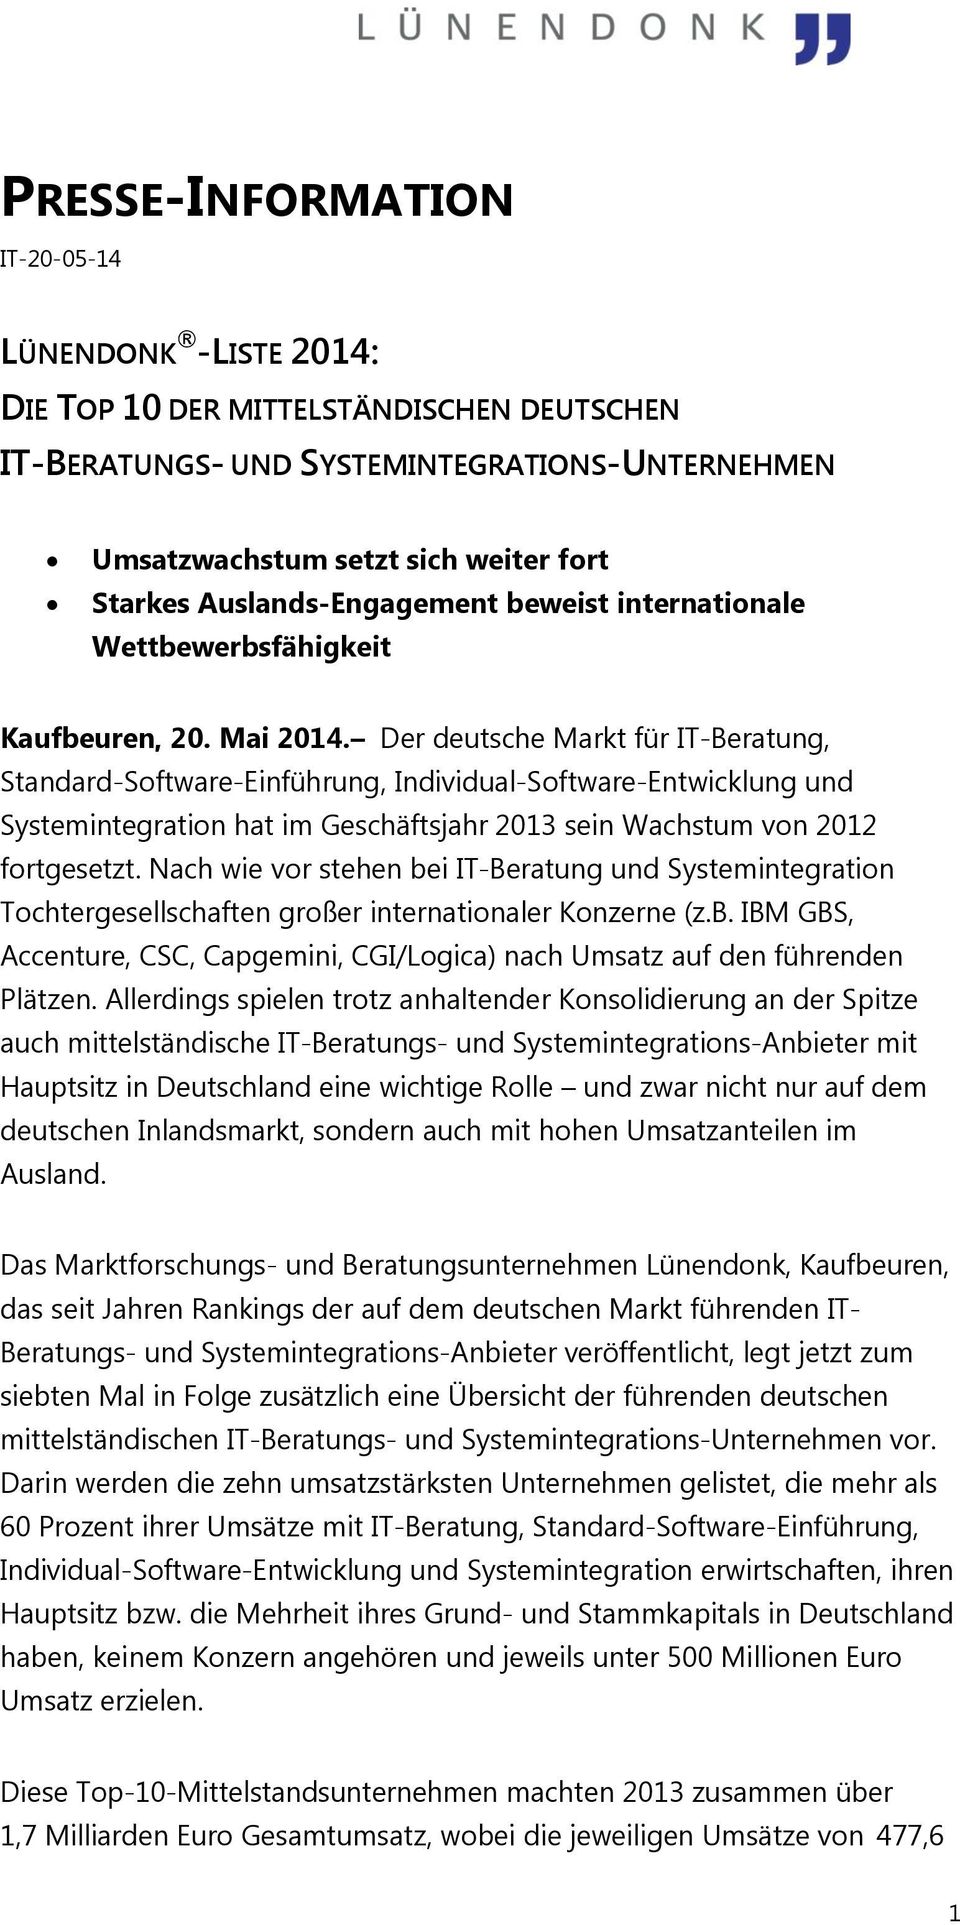 Der deutsche Markt für IT-Beratung, Standard-Software-Einführung, Individual-Software-Entwicklung und Systemintegration hat im Geschäftsjahr 2013 sein Wachstum von 2012 fortgesetzt.